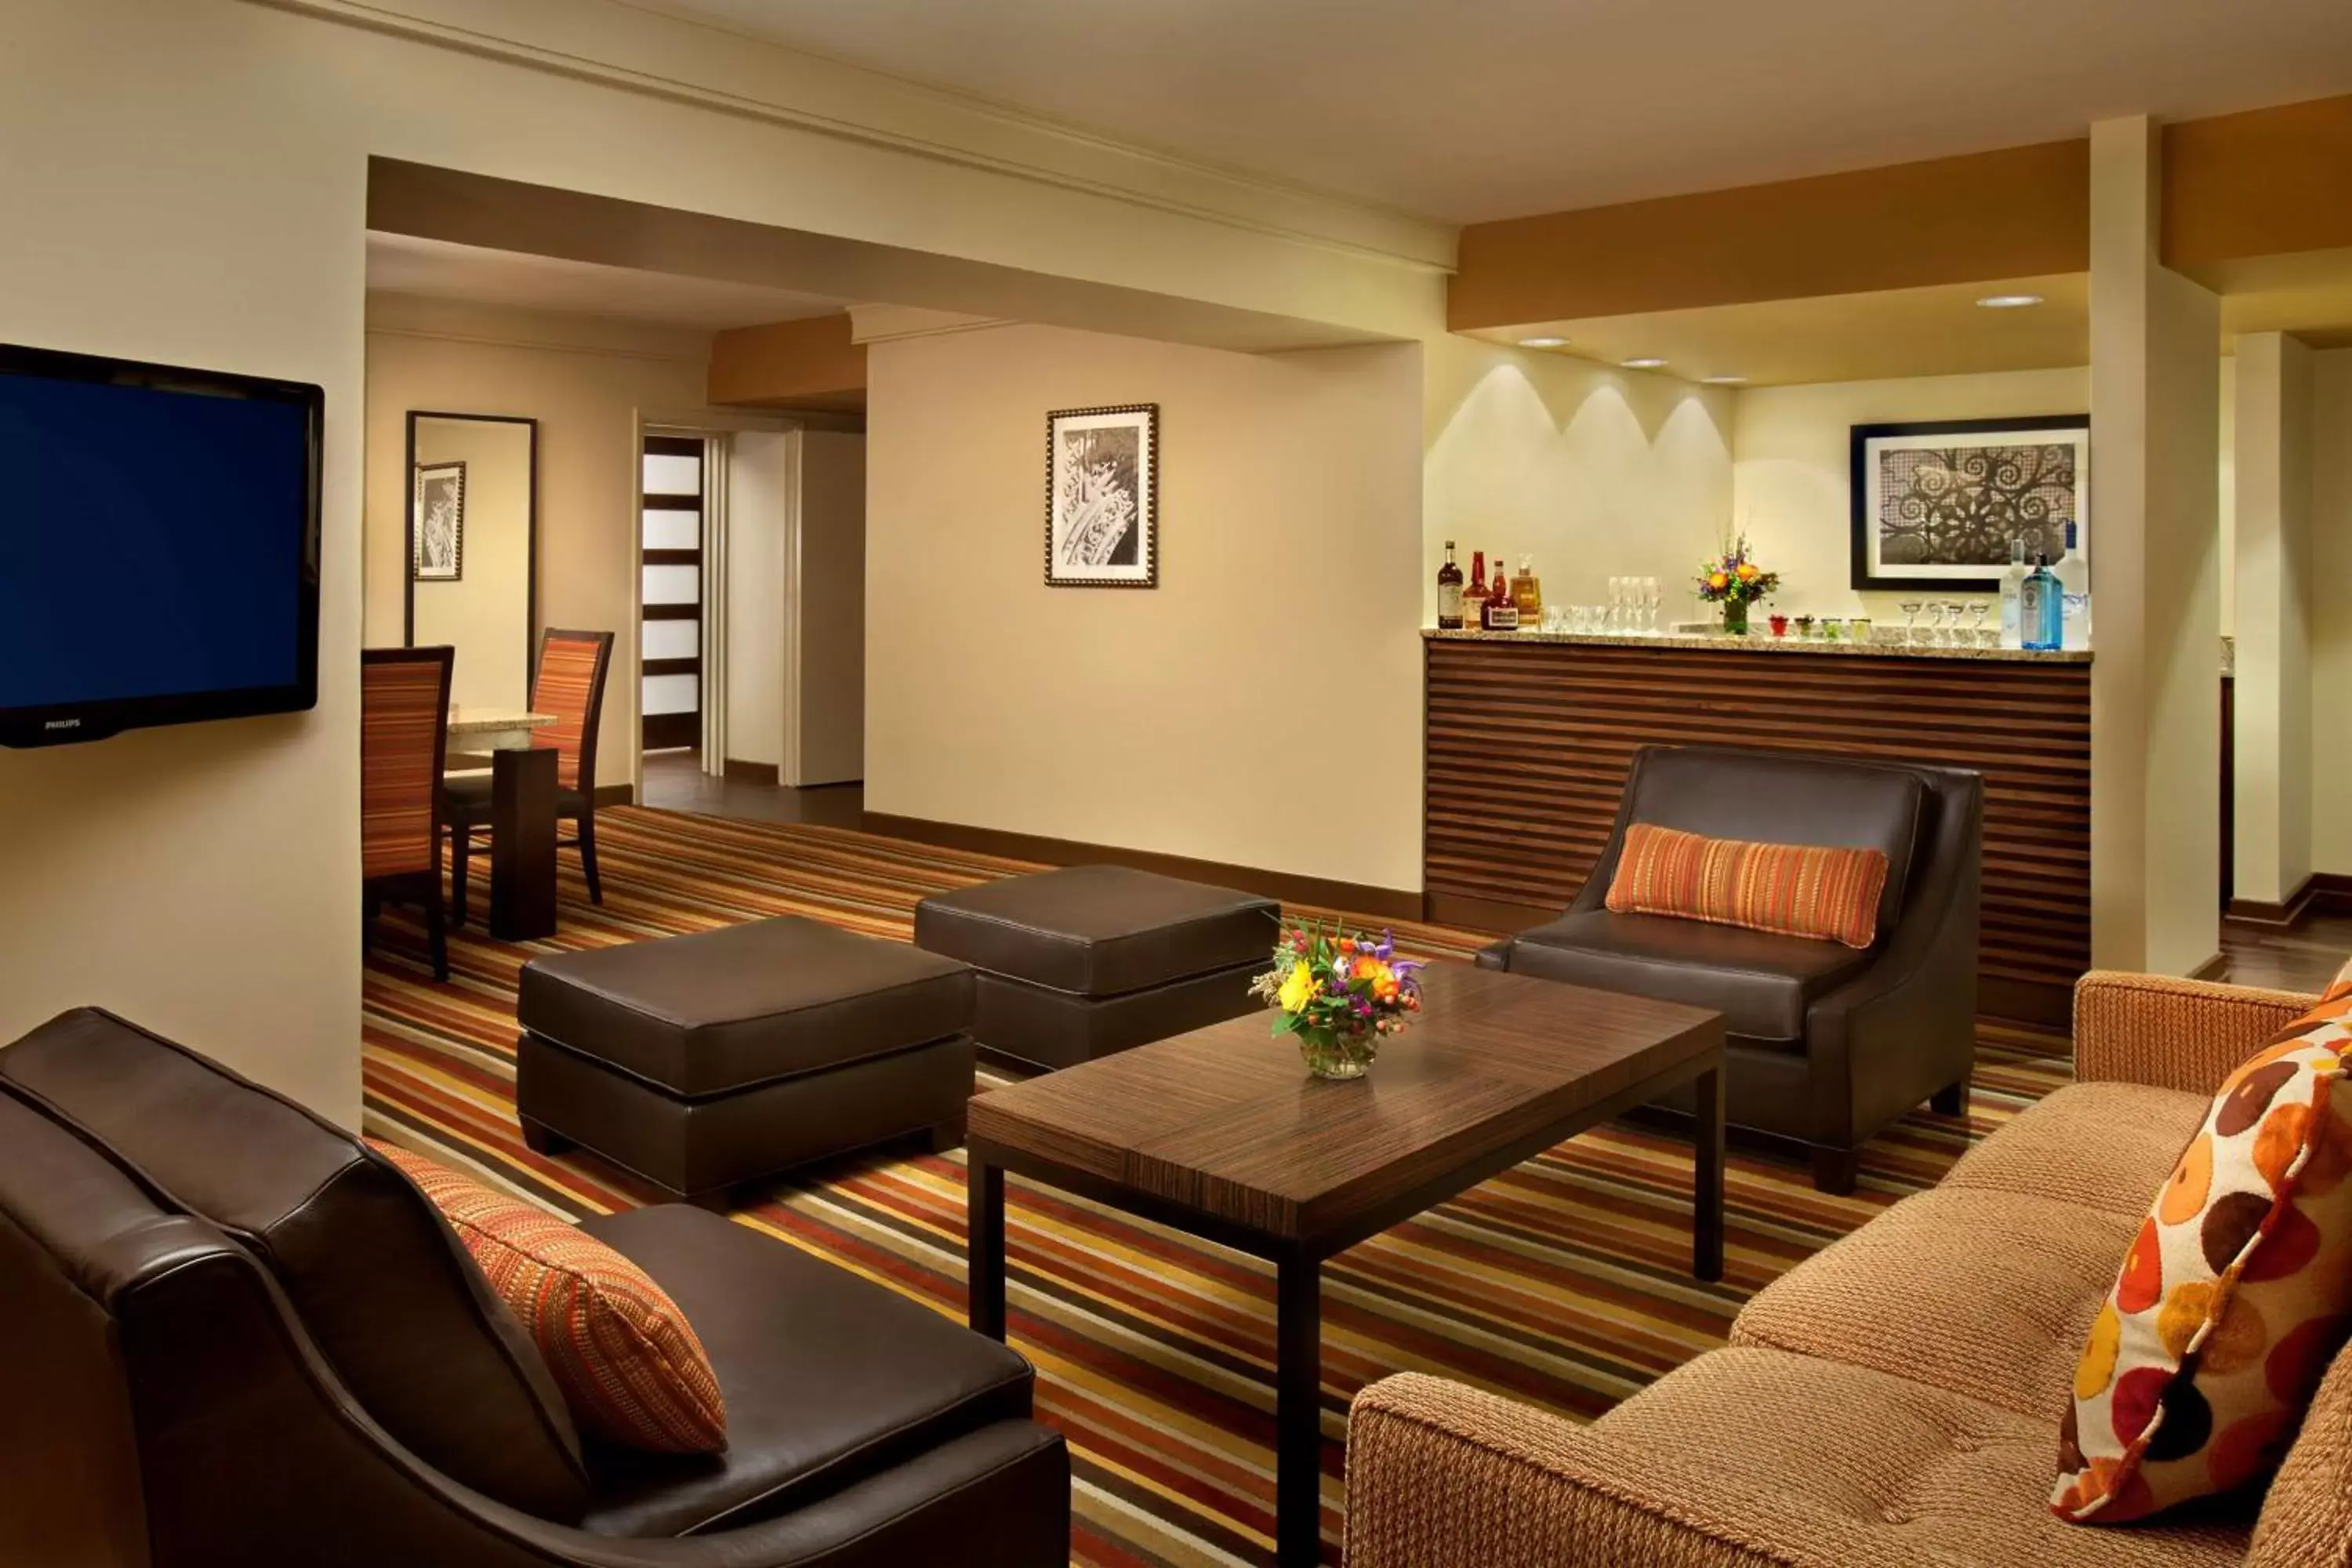 Bedroom, Seating Area in Hilton Palacio del Rio